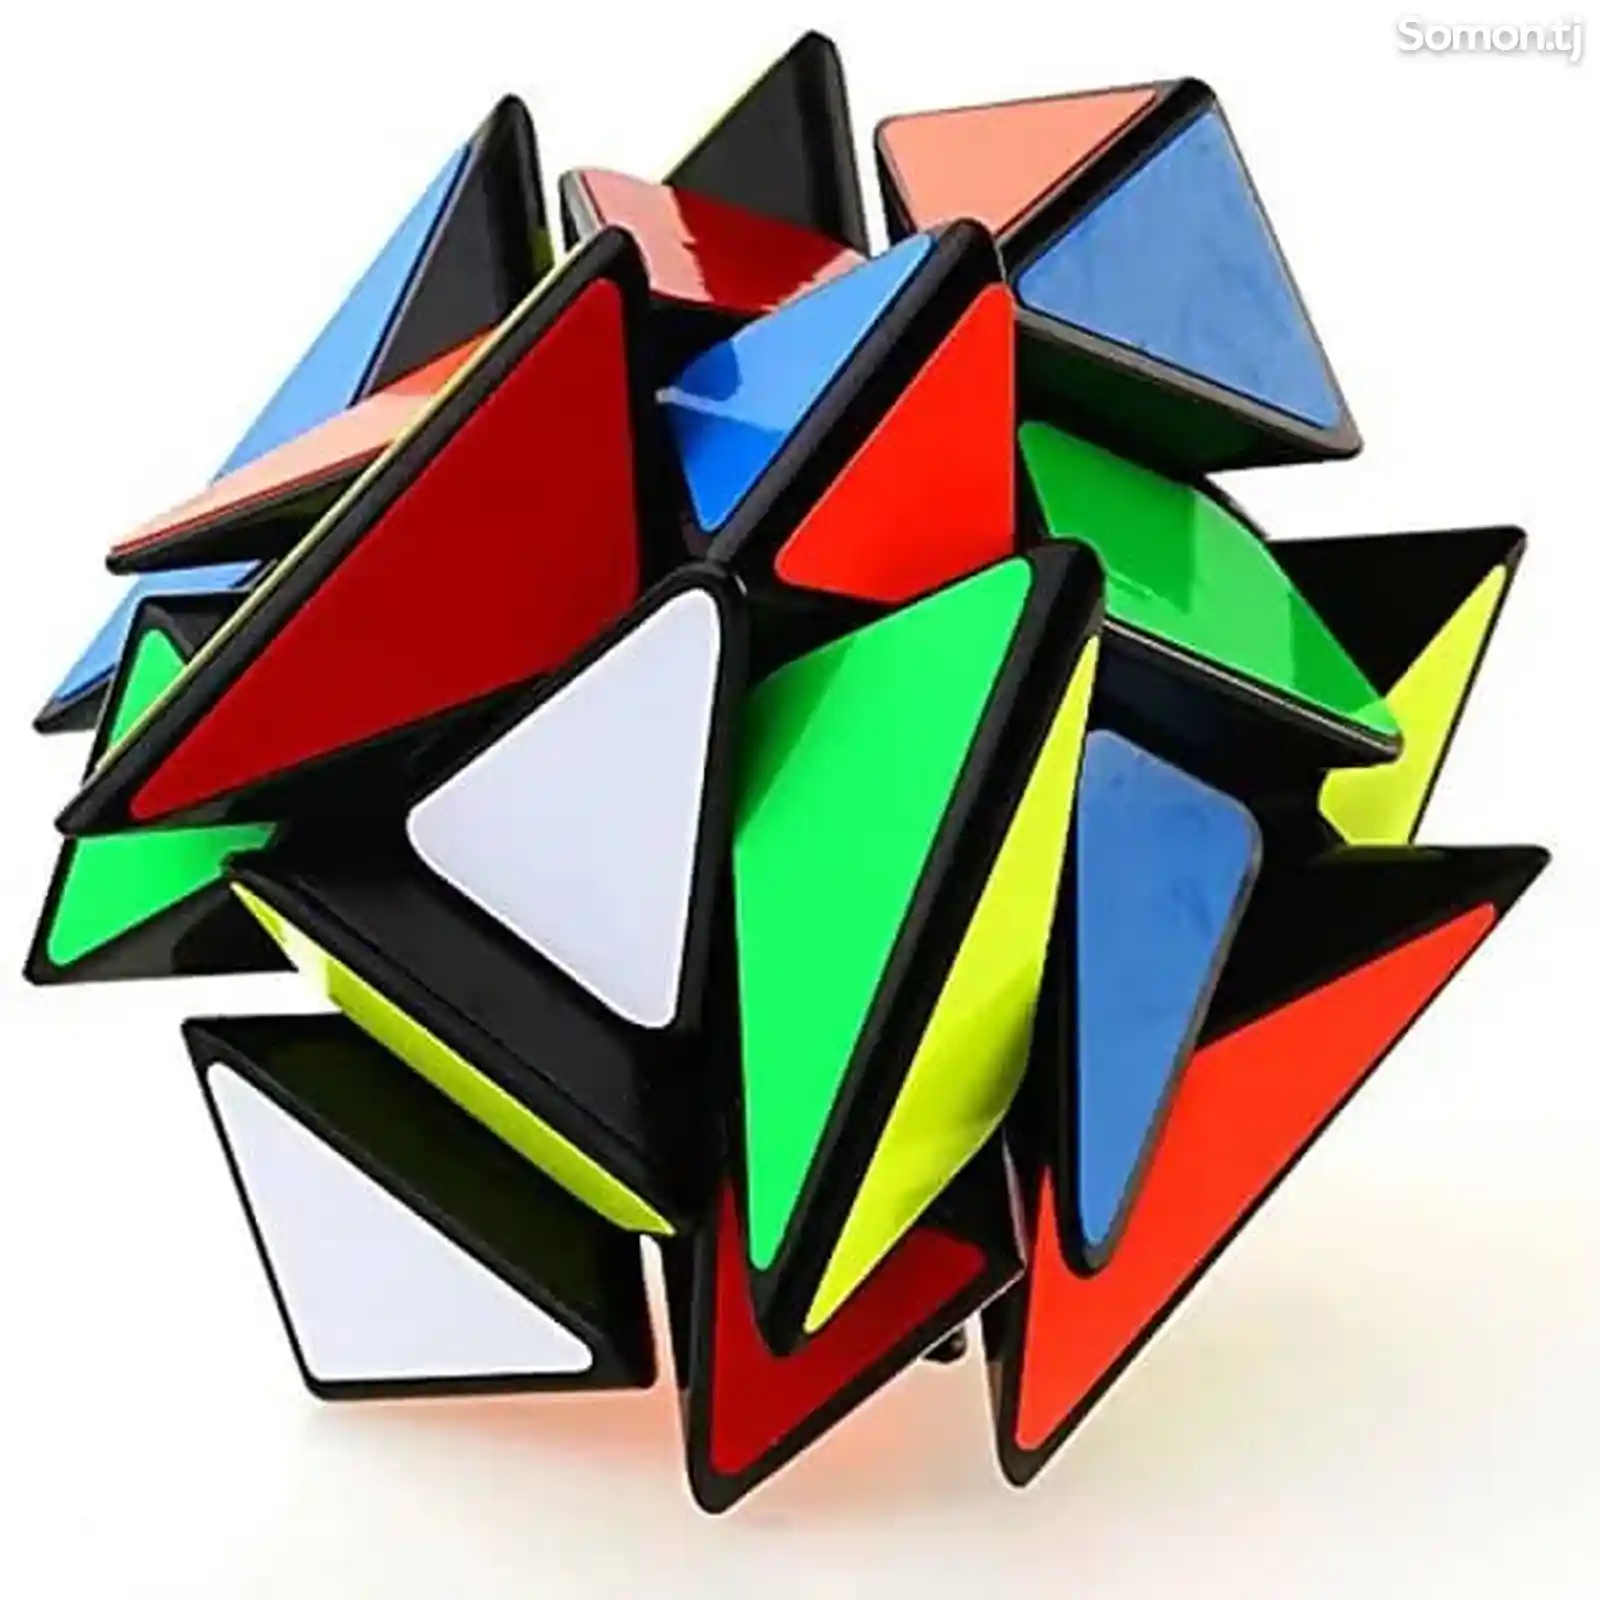 Аксис куб кубика Рубика, Axis cube-4